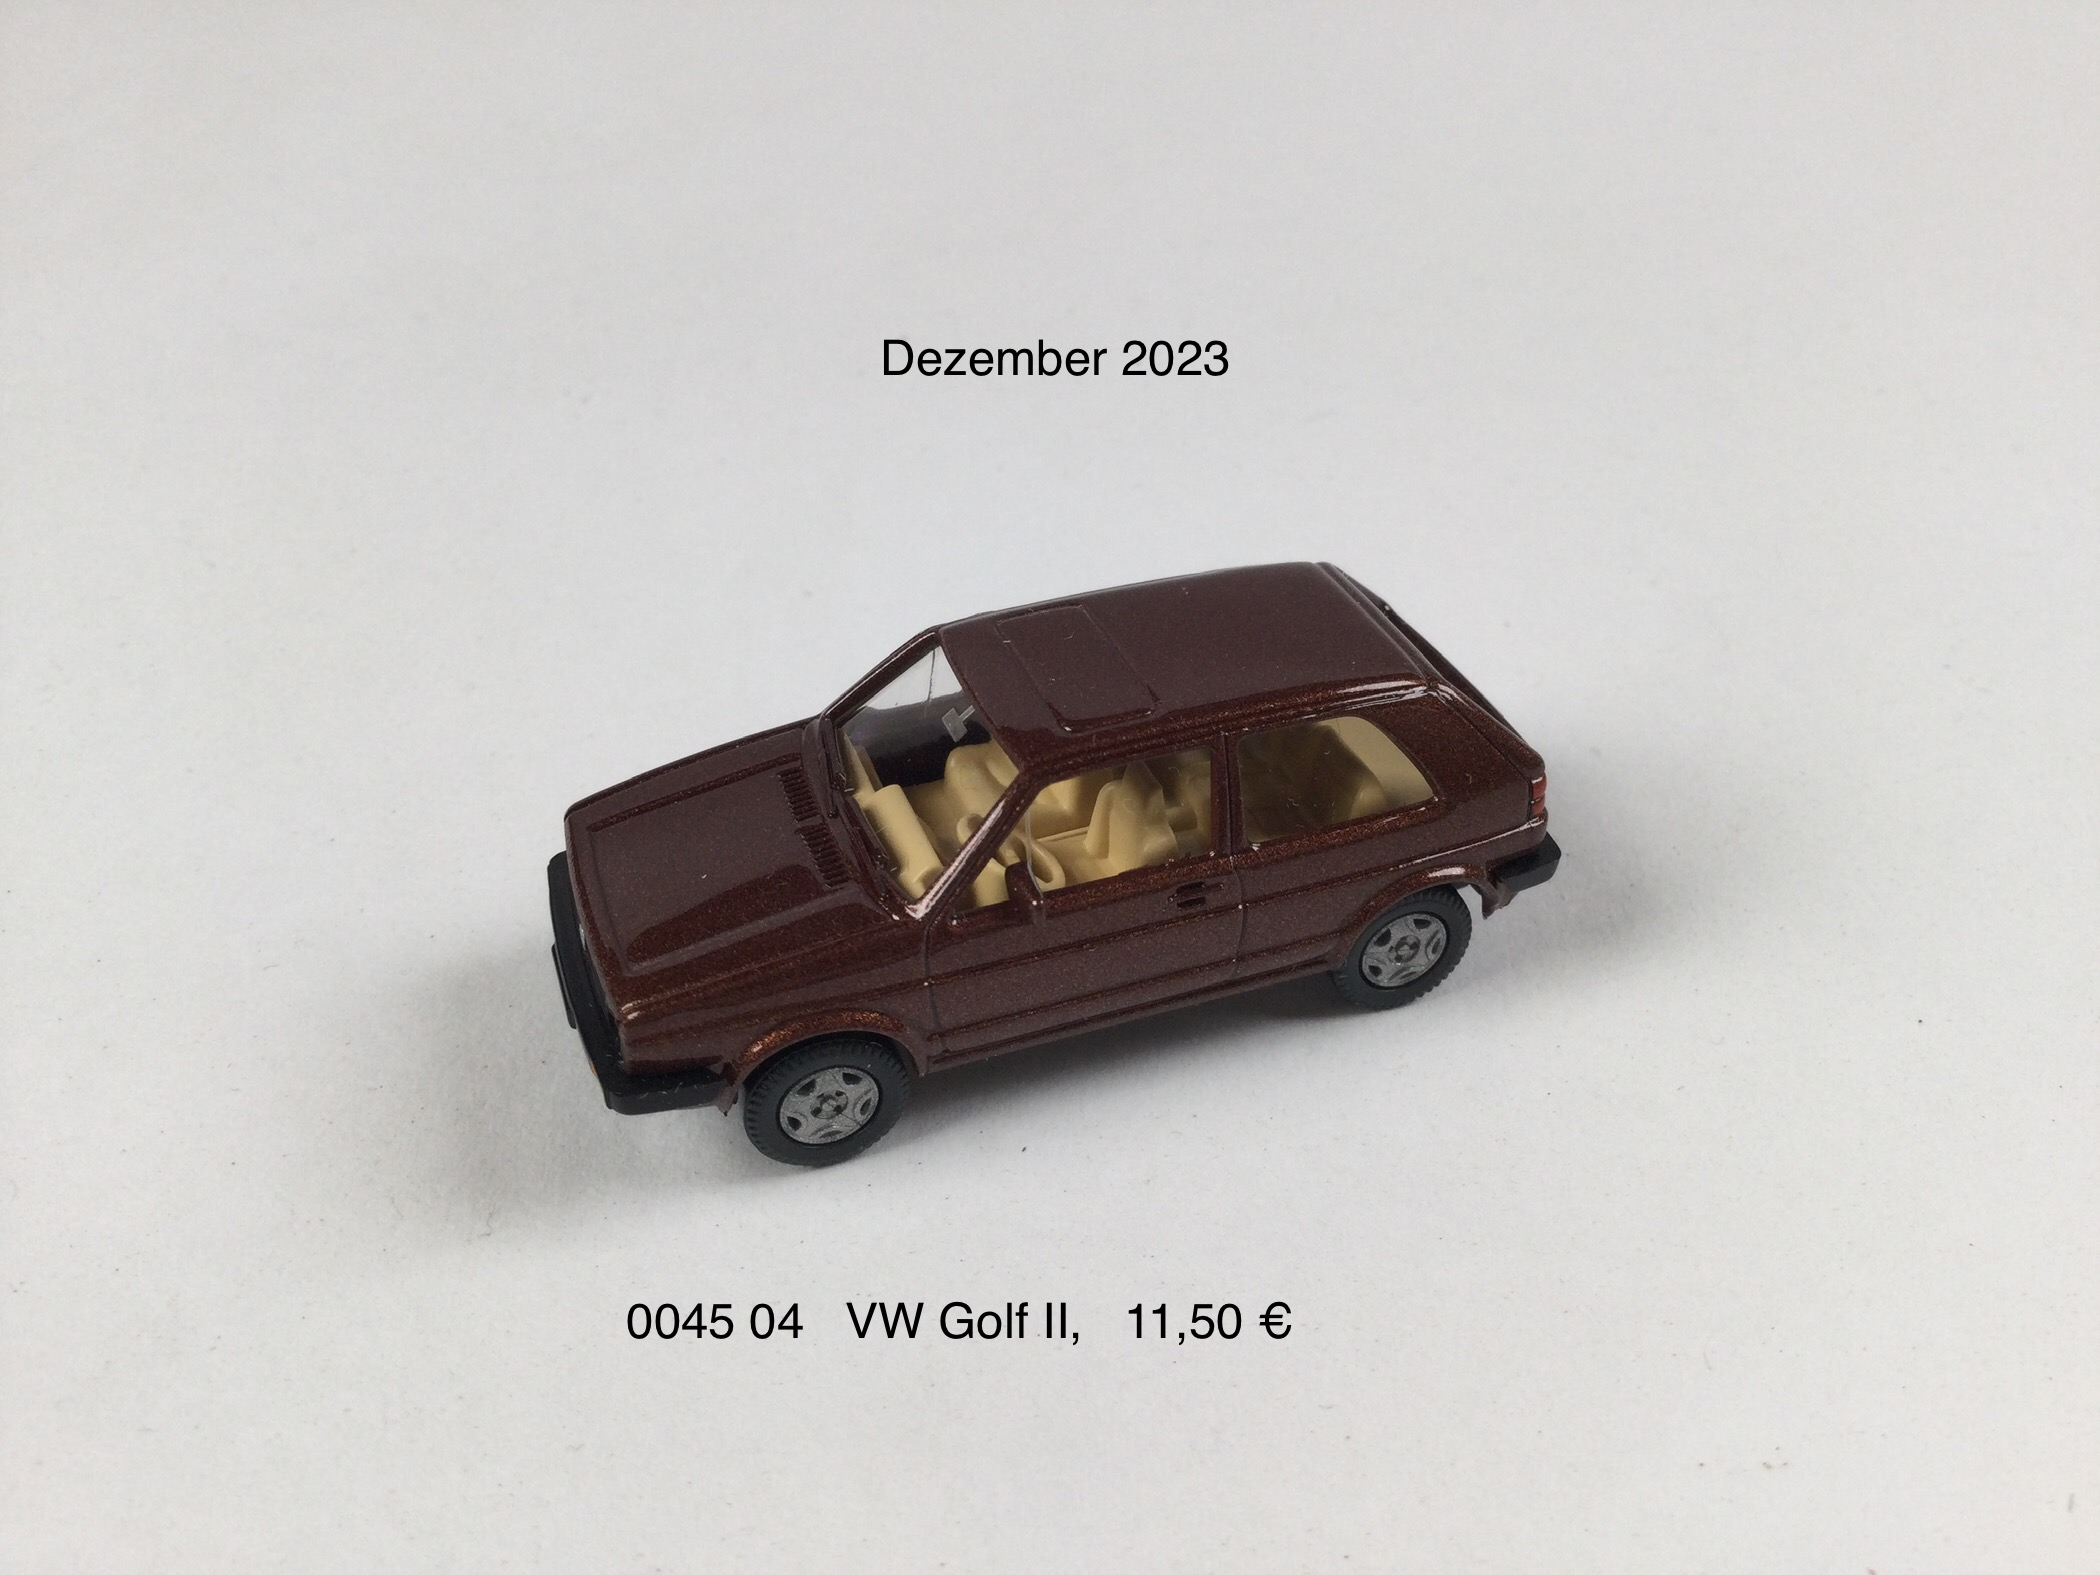 VW Golf II "umbrabraum-met."